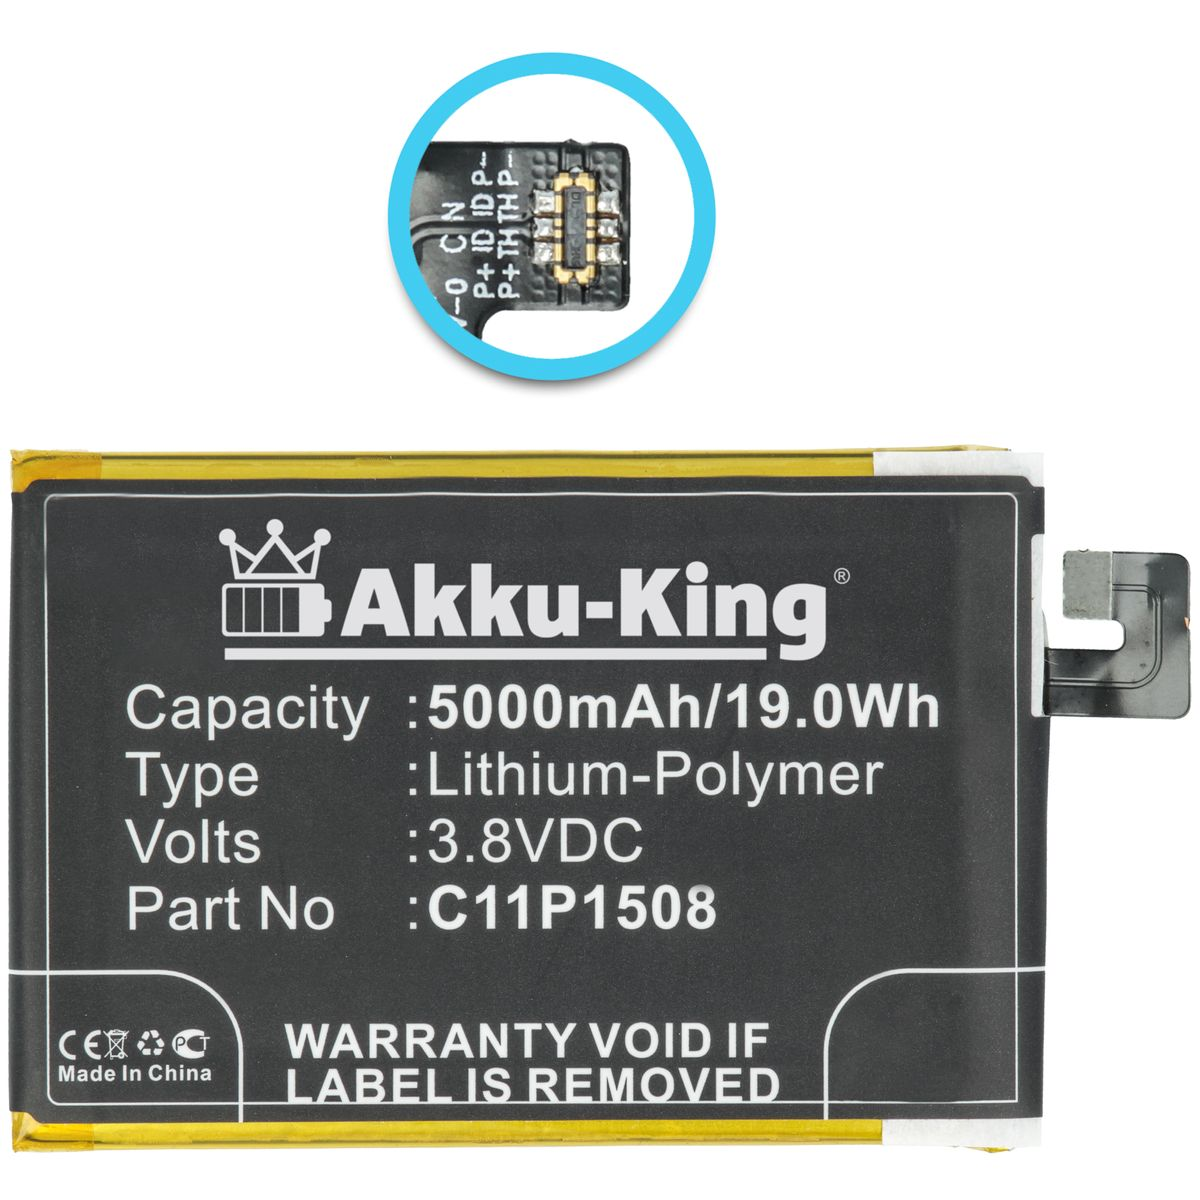 AKKU-KING Akku für Handy-Akku, C11P1508 3.8 Volt, Li-Polymer Asus 5000mAh